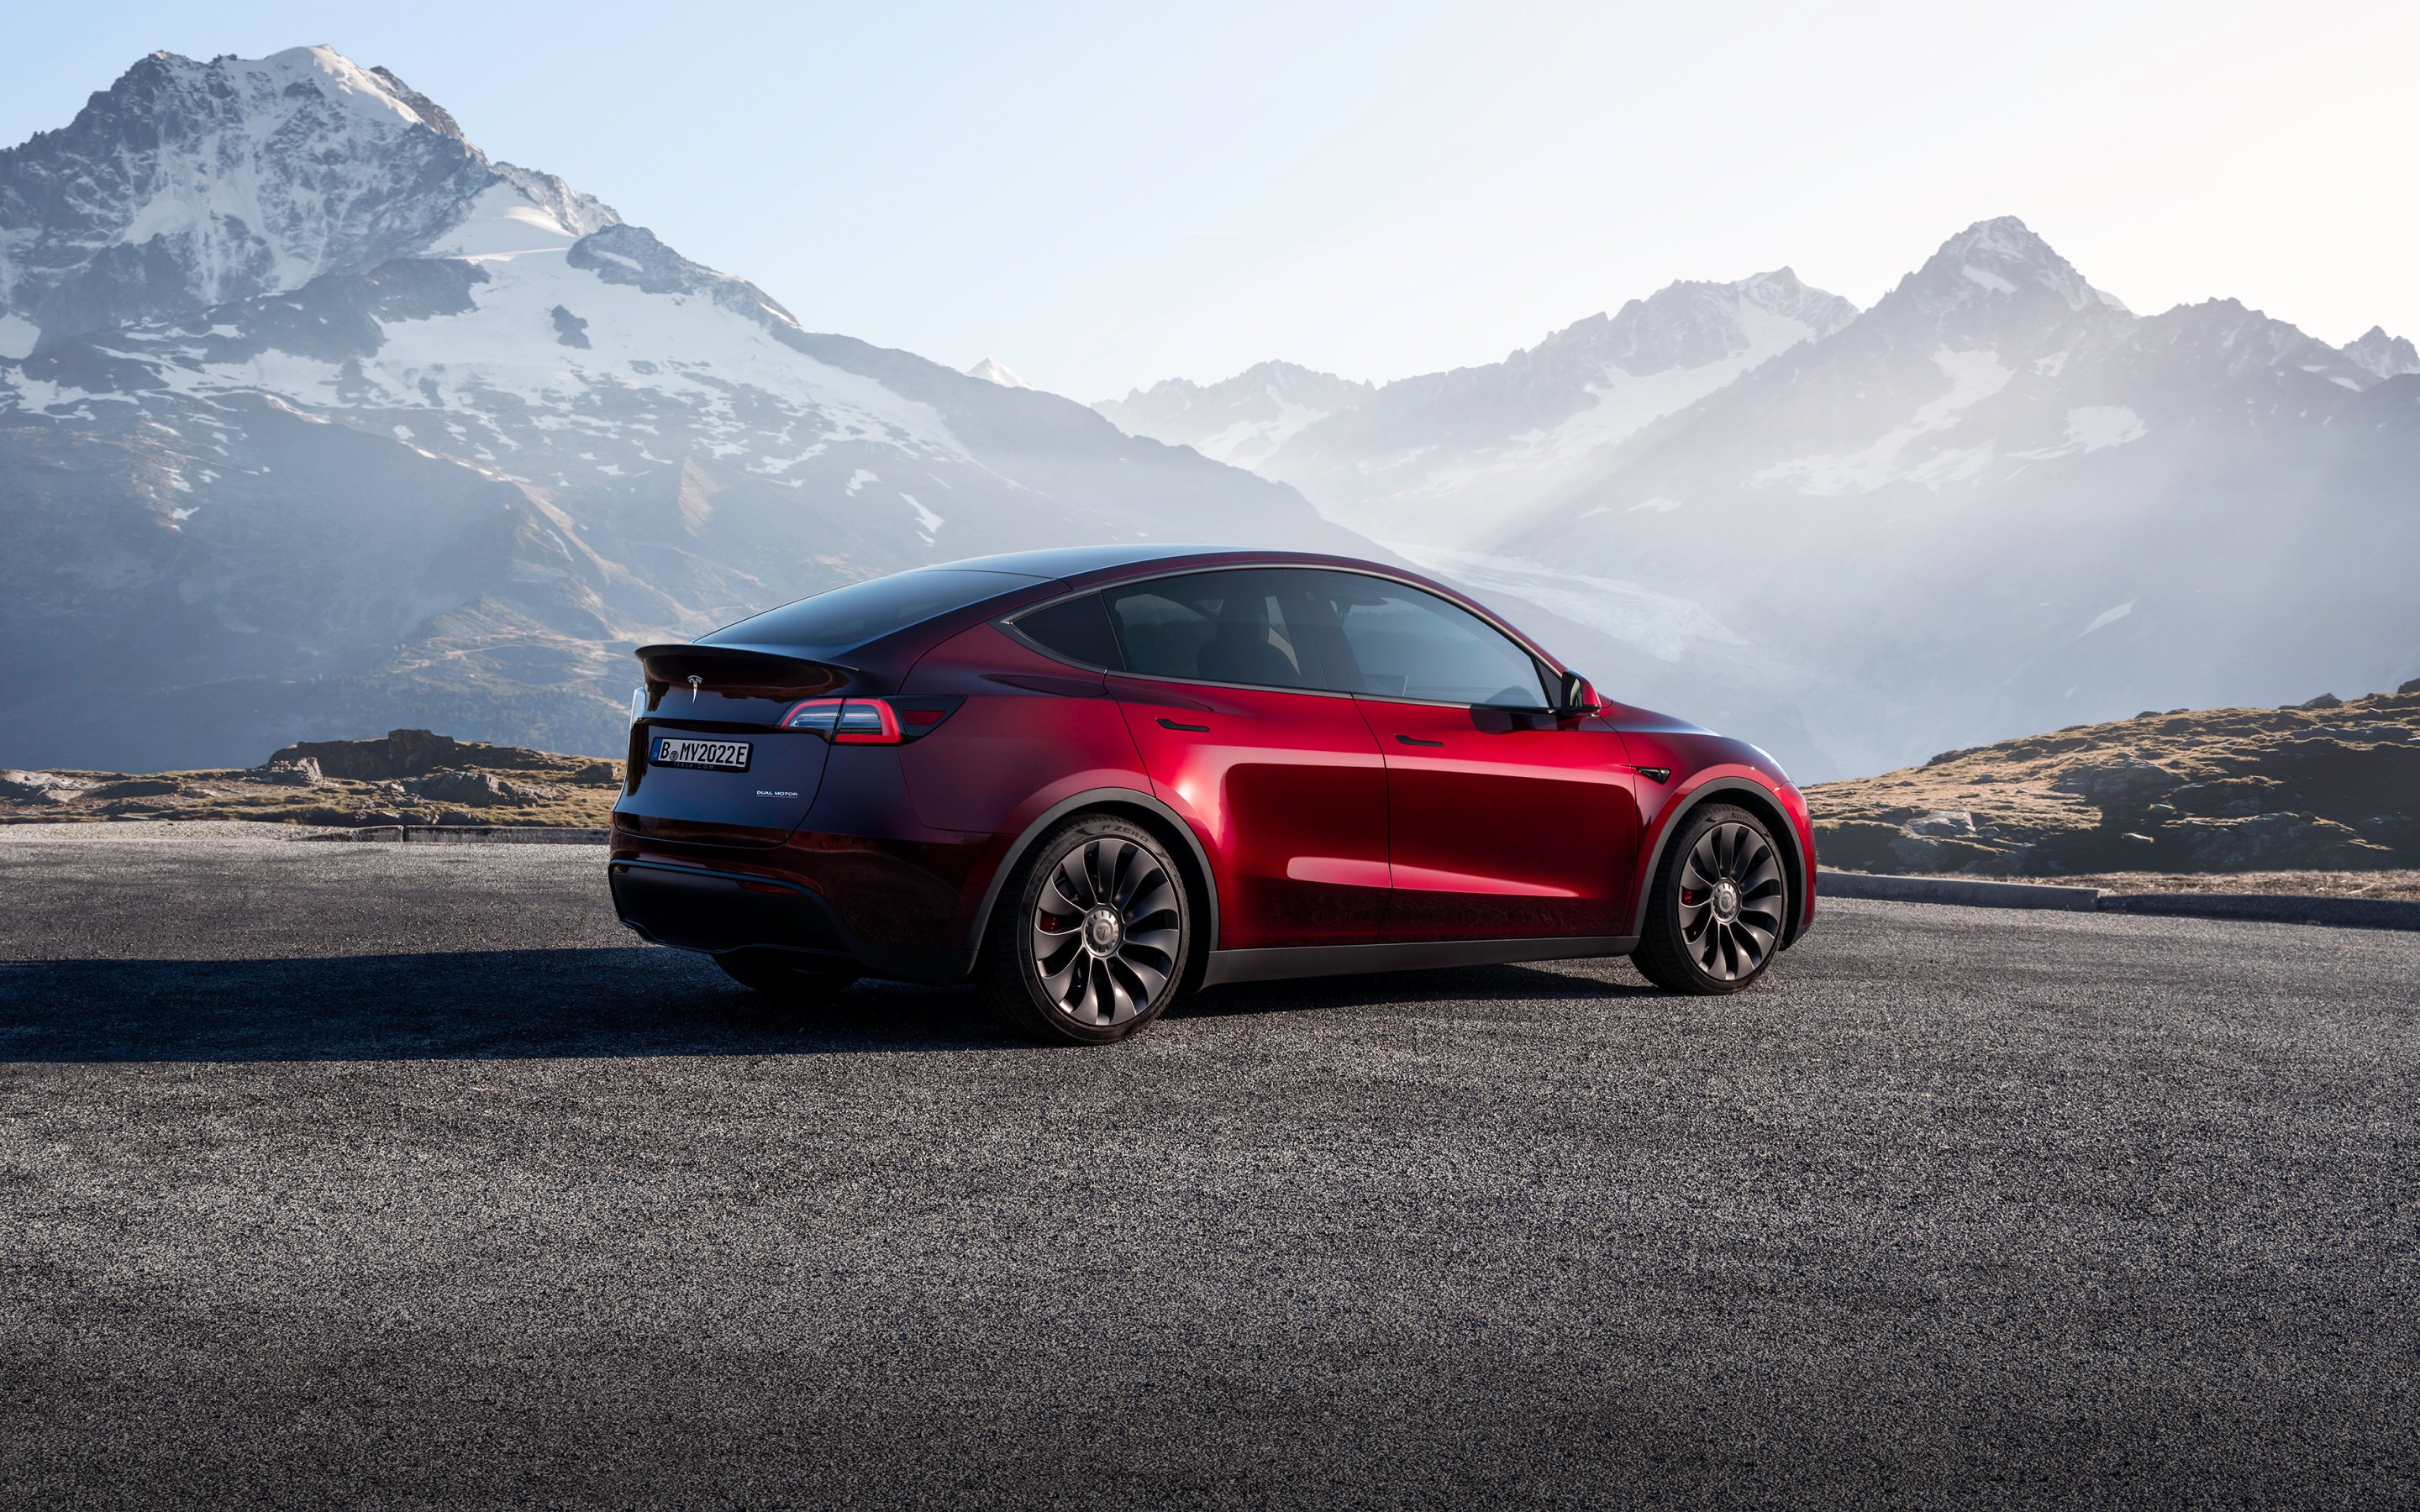 Tesla a vendu toutes les voitures électriques Model Y aux États-Unis, la  livraison étant prévue pour le premier trimestre 2023.